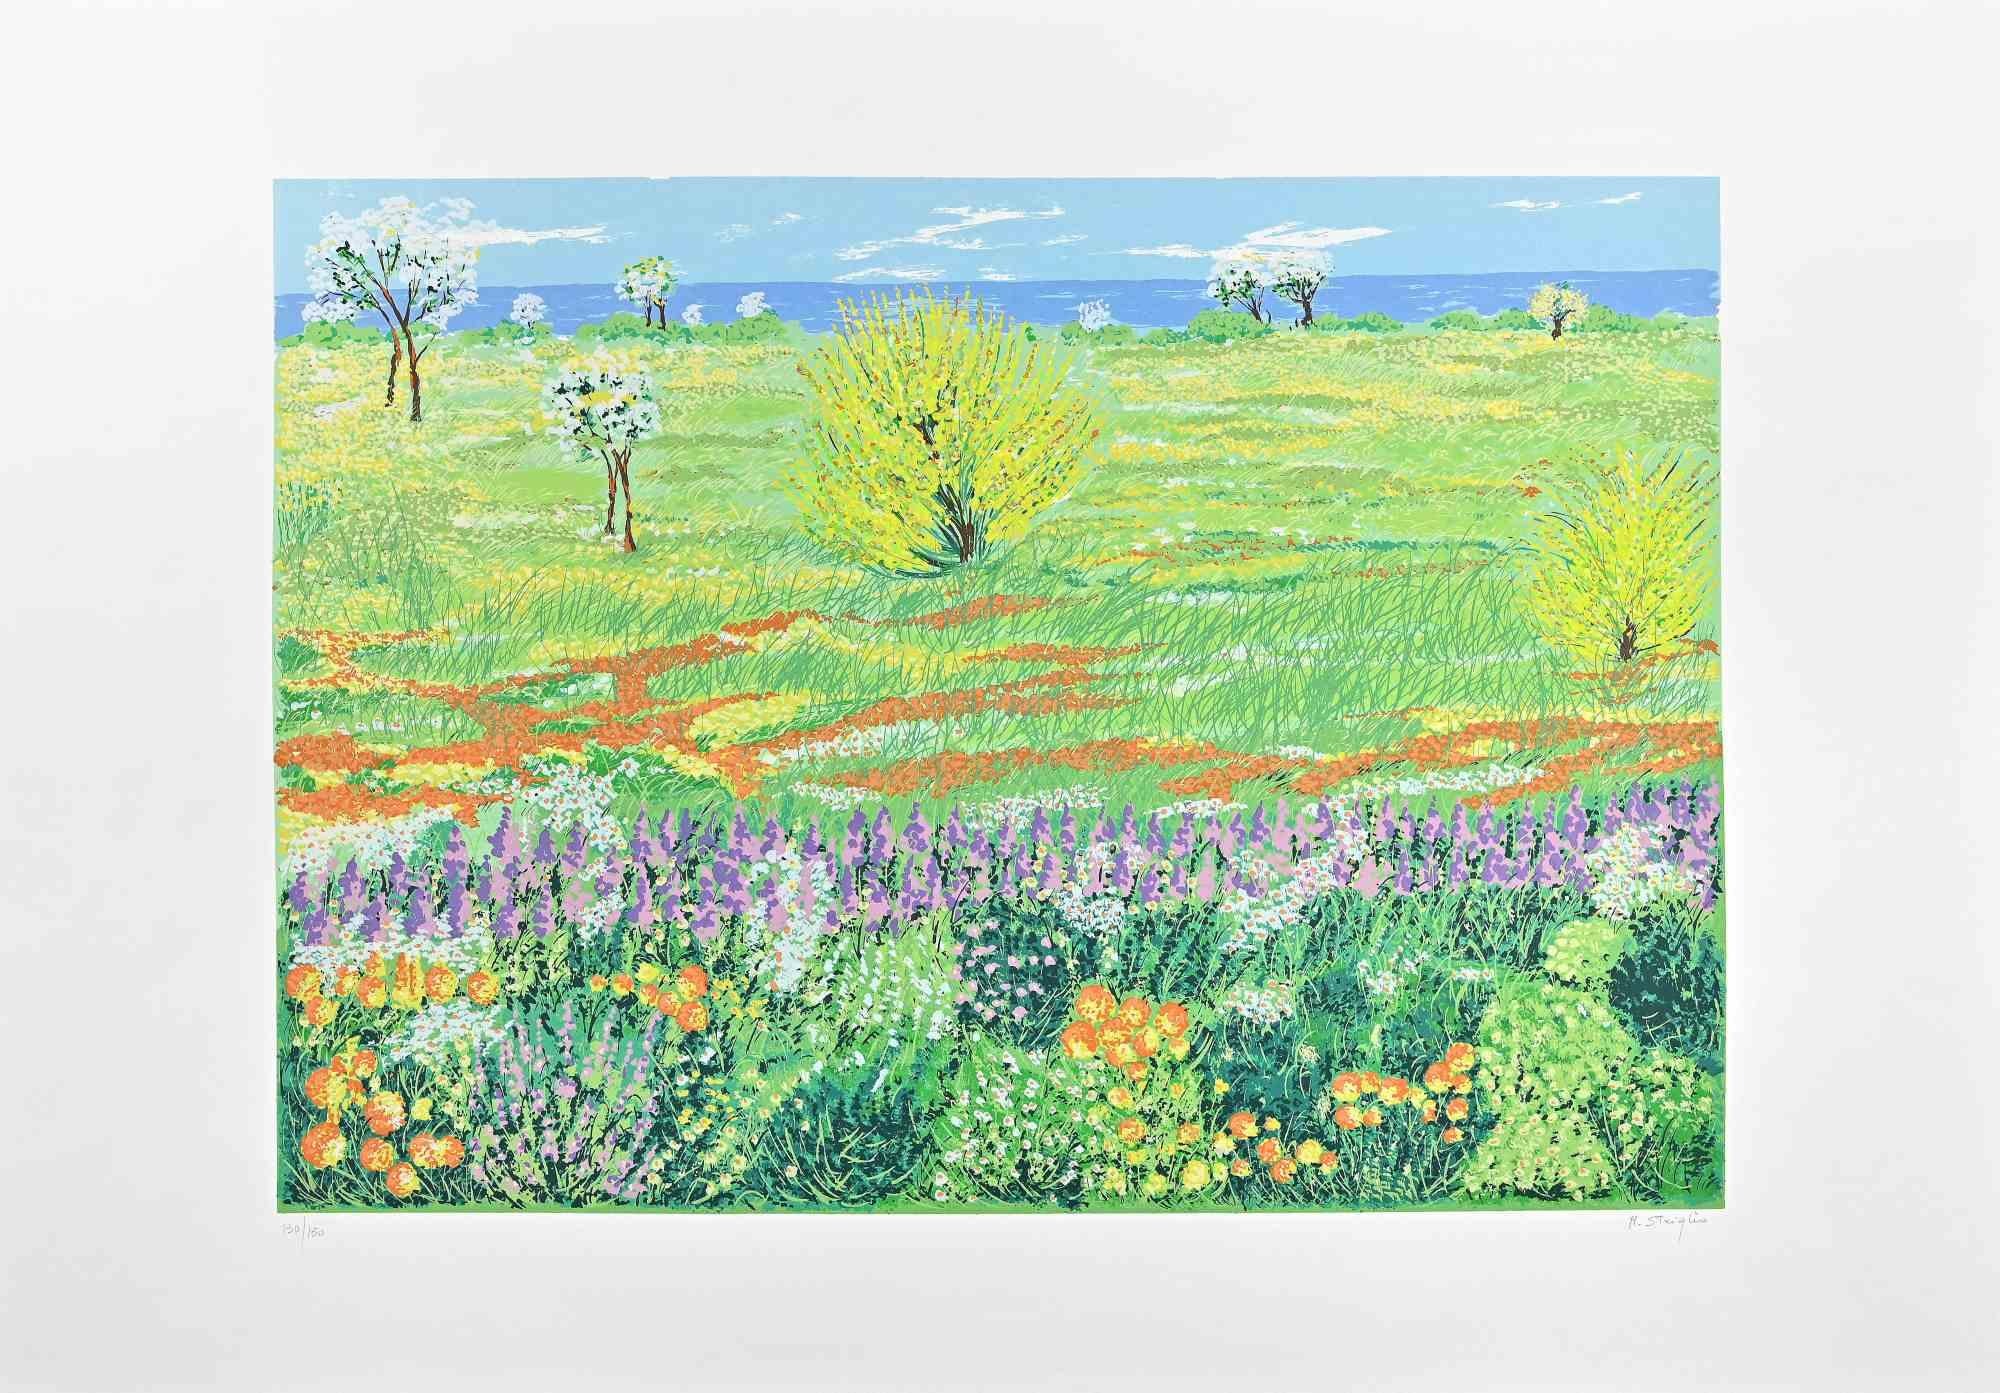 Maddalena Striglio Figurative Print - Meadow in Spring - Screen Print by M. Striglio - Late 20th century